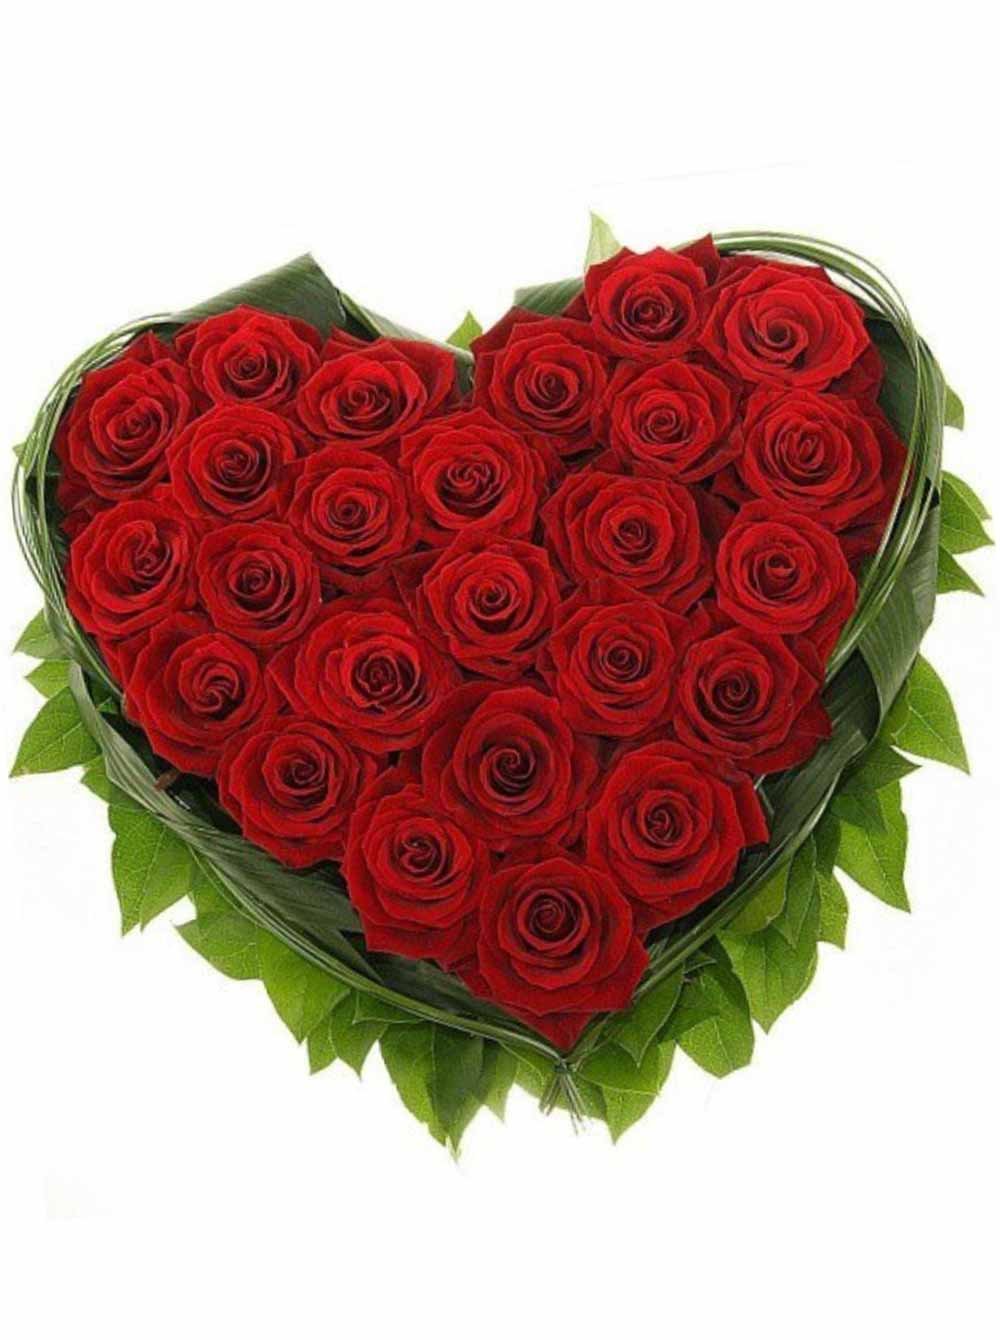 Букет роз в виде сердца из красных